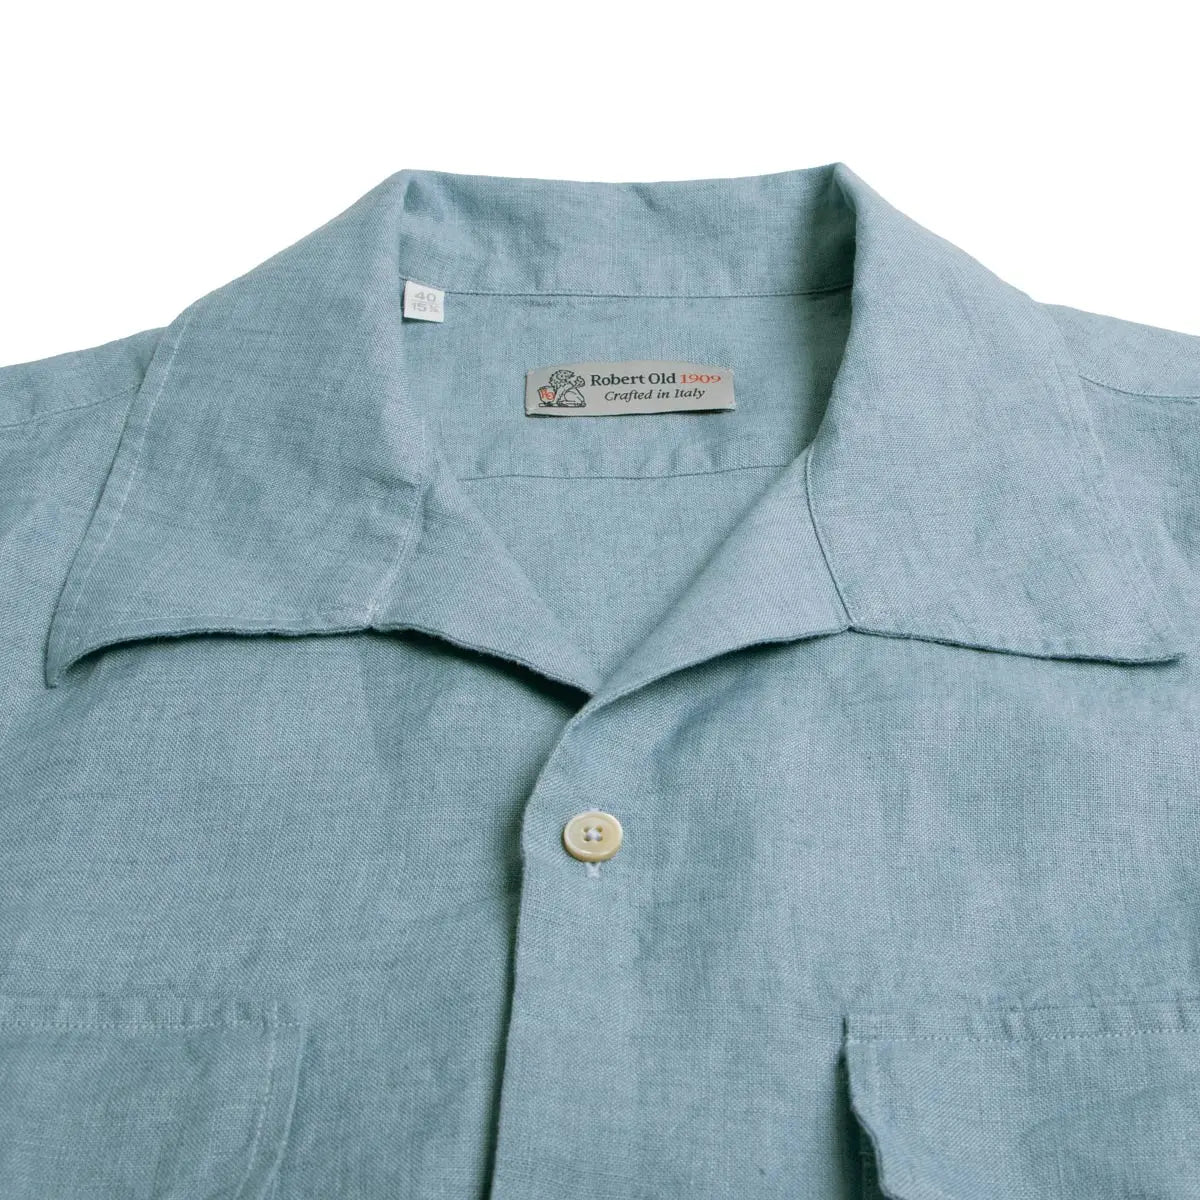 Italian Linen Light Blue Short sleeve Shirt